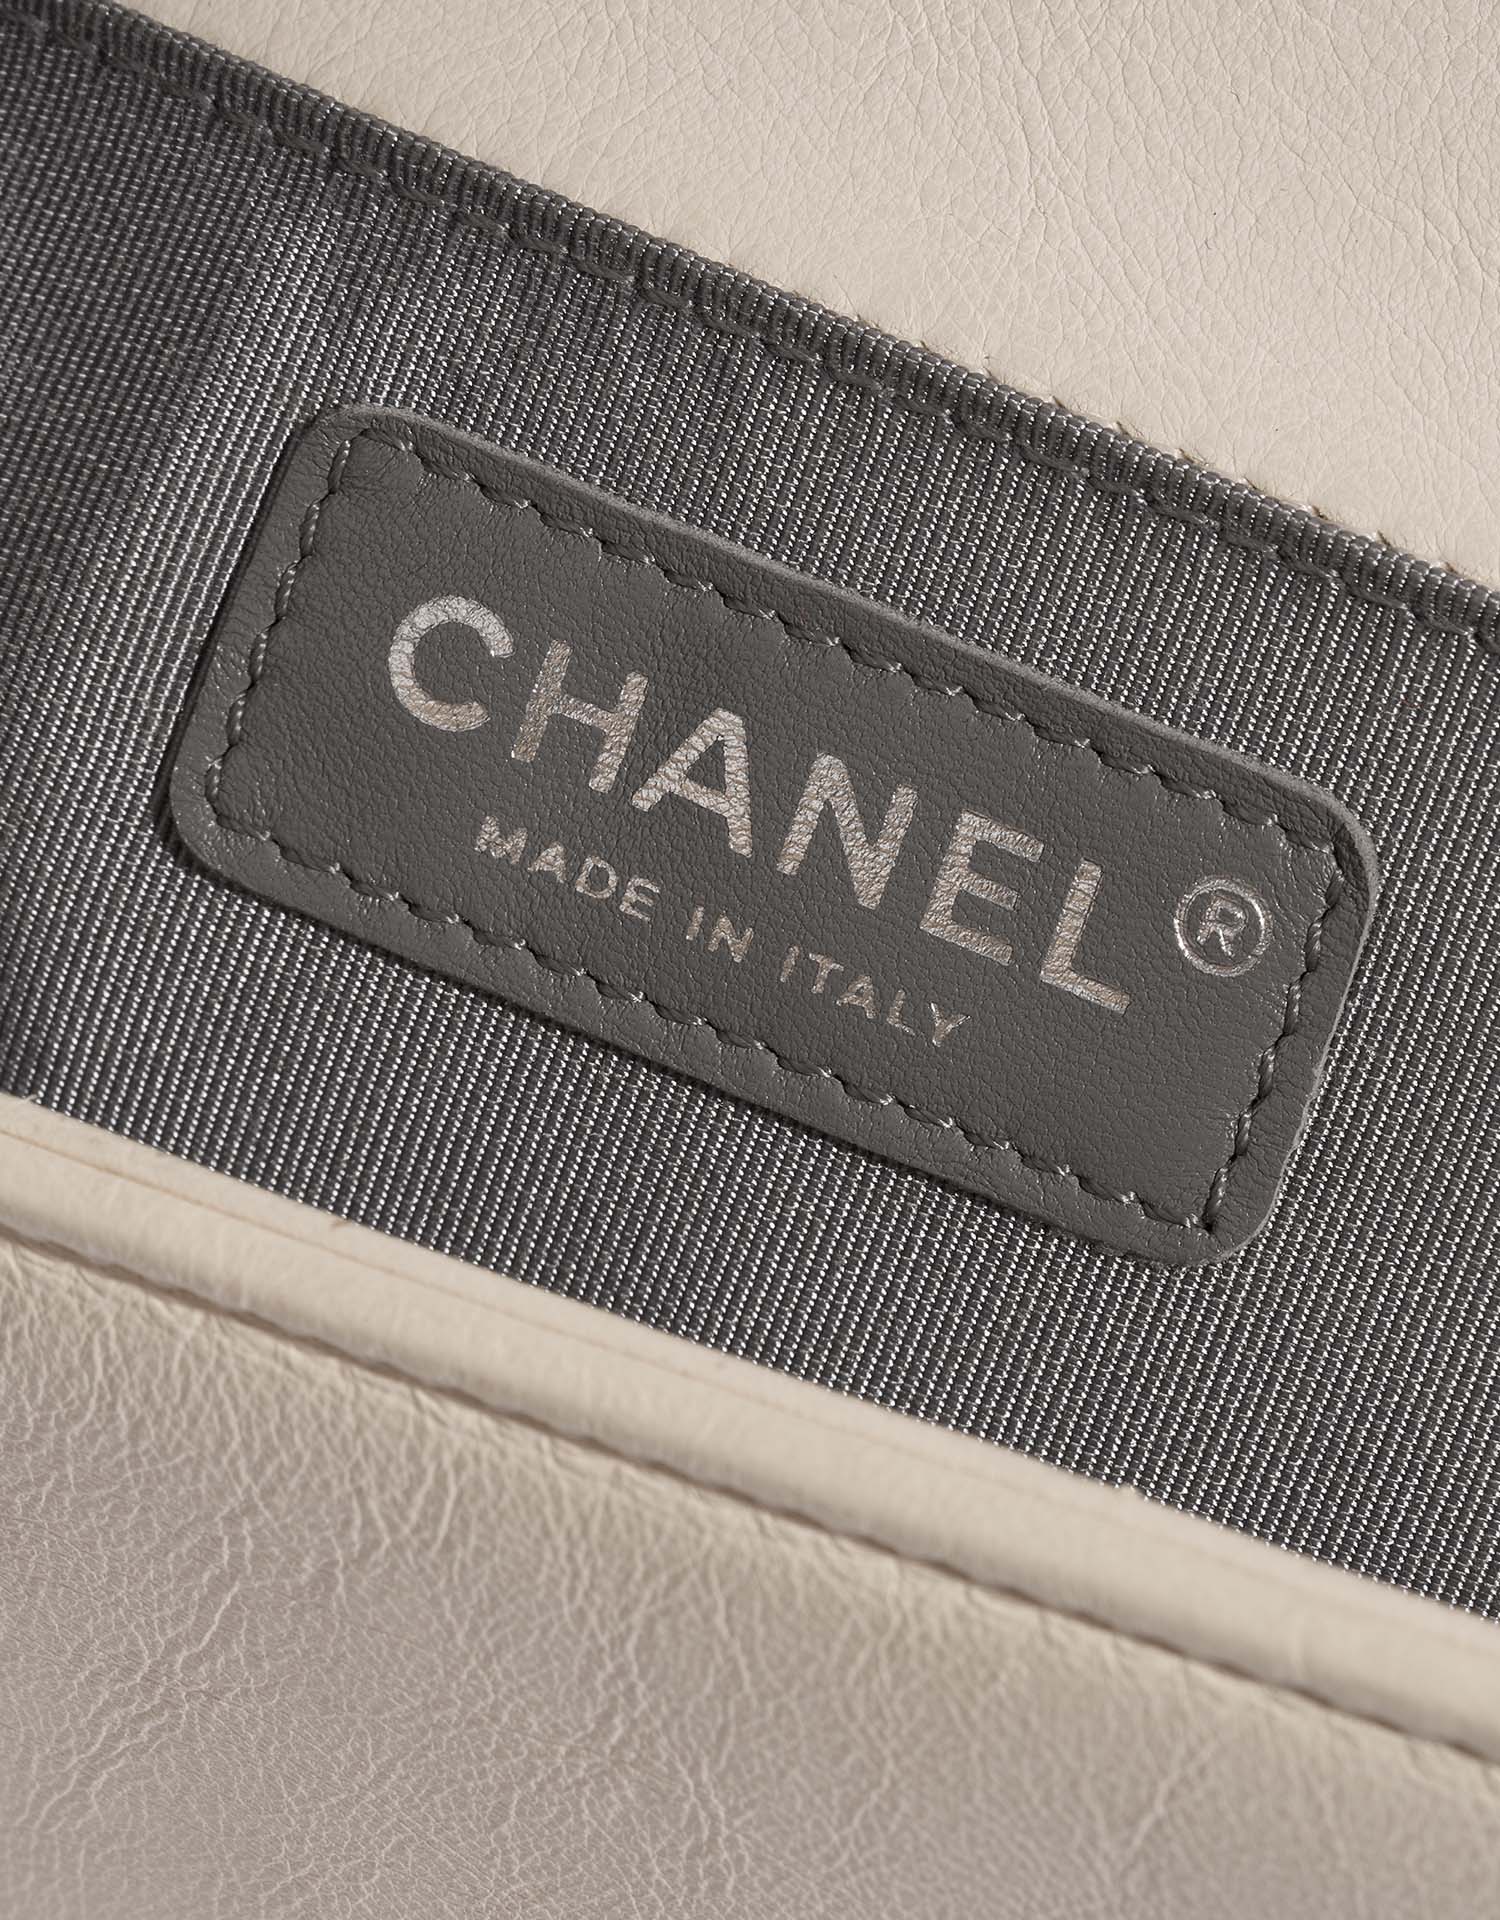 Chanel Boy OldMedium Beige Logo  | Sell your designer bag on Saclab.com